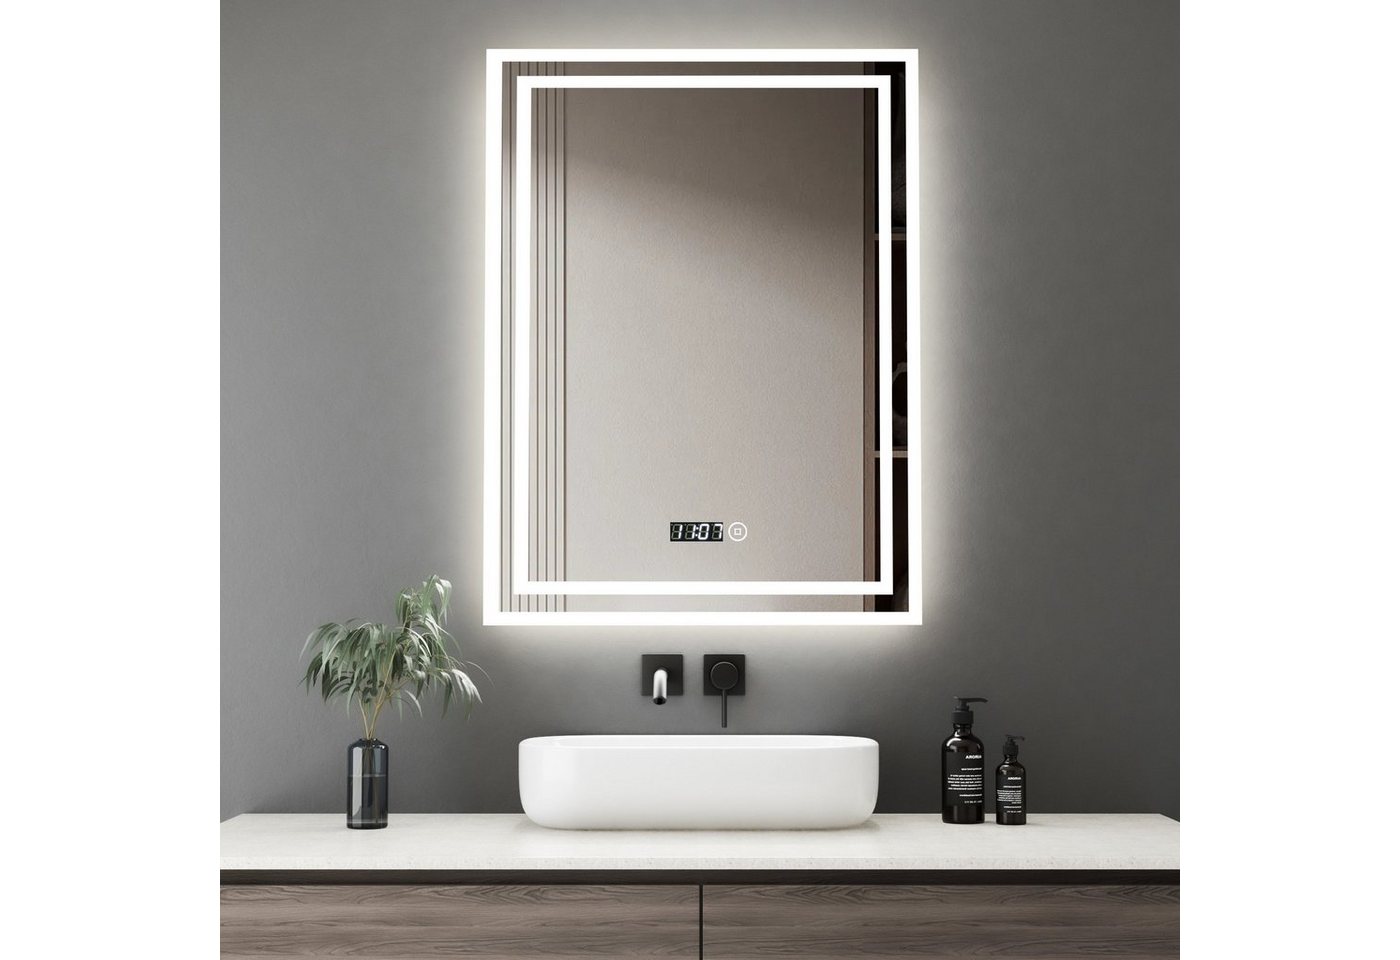 WDWRITTI Wandspiegel Badspiegel Led 50x70 mit Uhr 3Lichtfarben Helligkeit dimmbar (Spiegel mit beleuchtung, Speicherfunktion), Energiesparend, IP44 von WDWRITTI